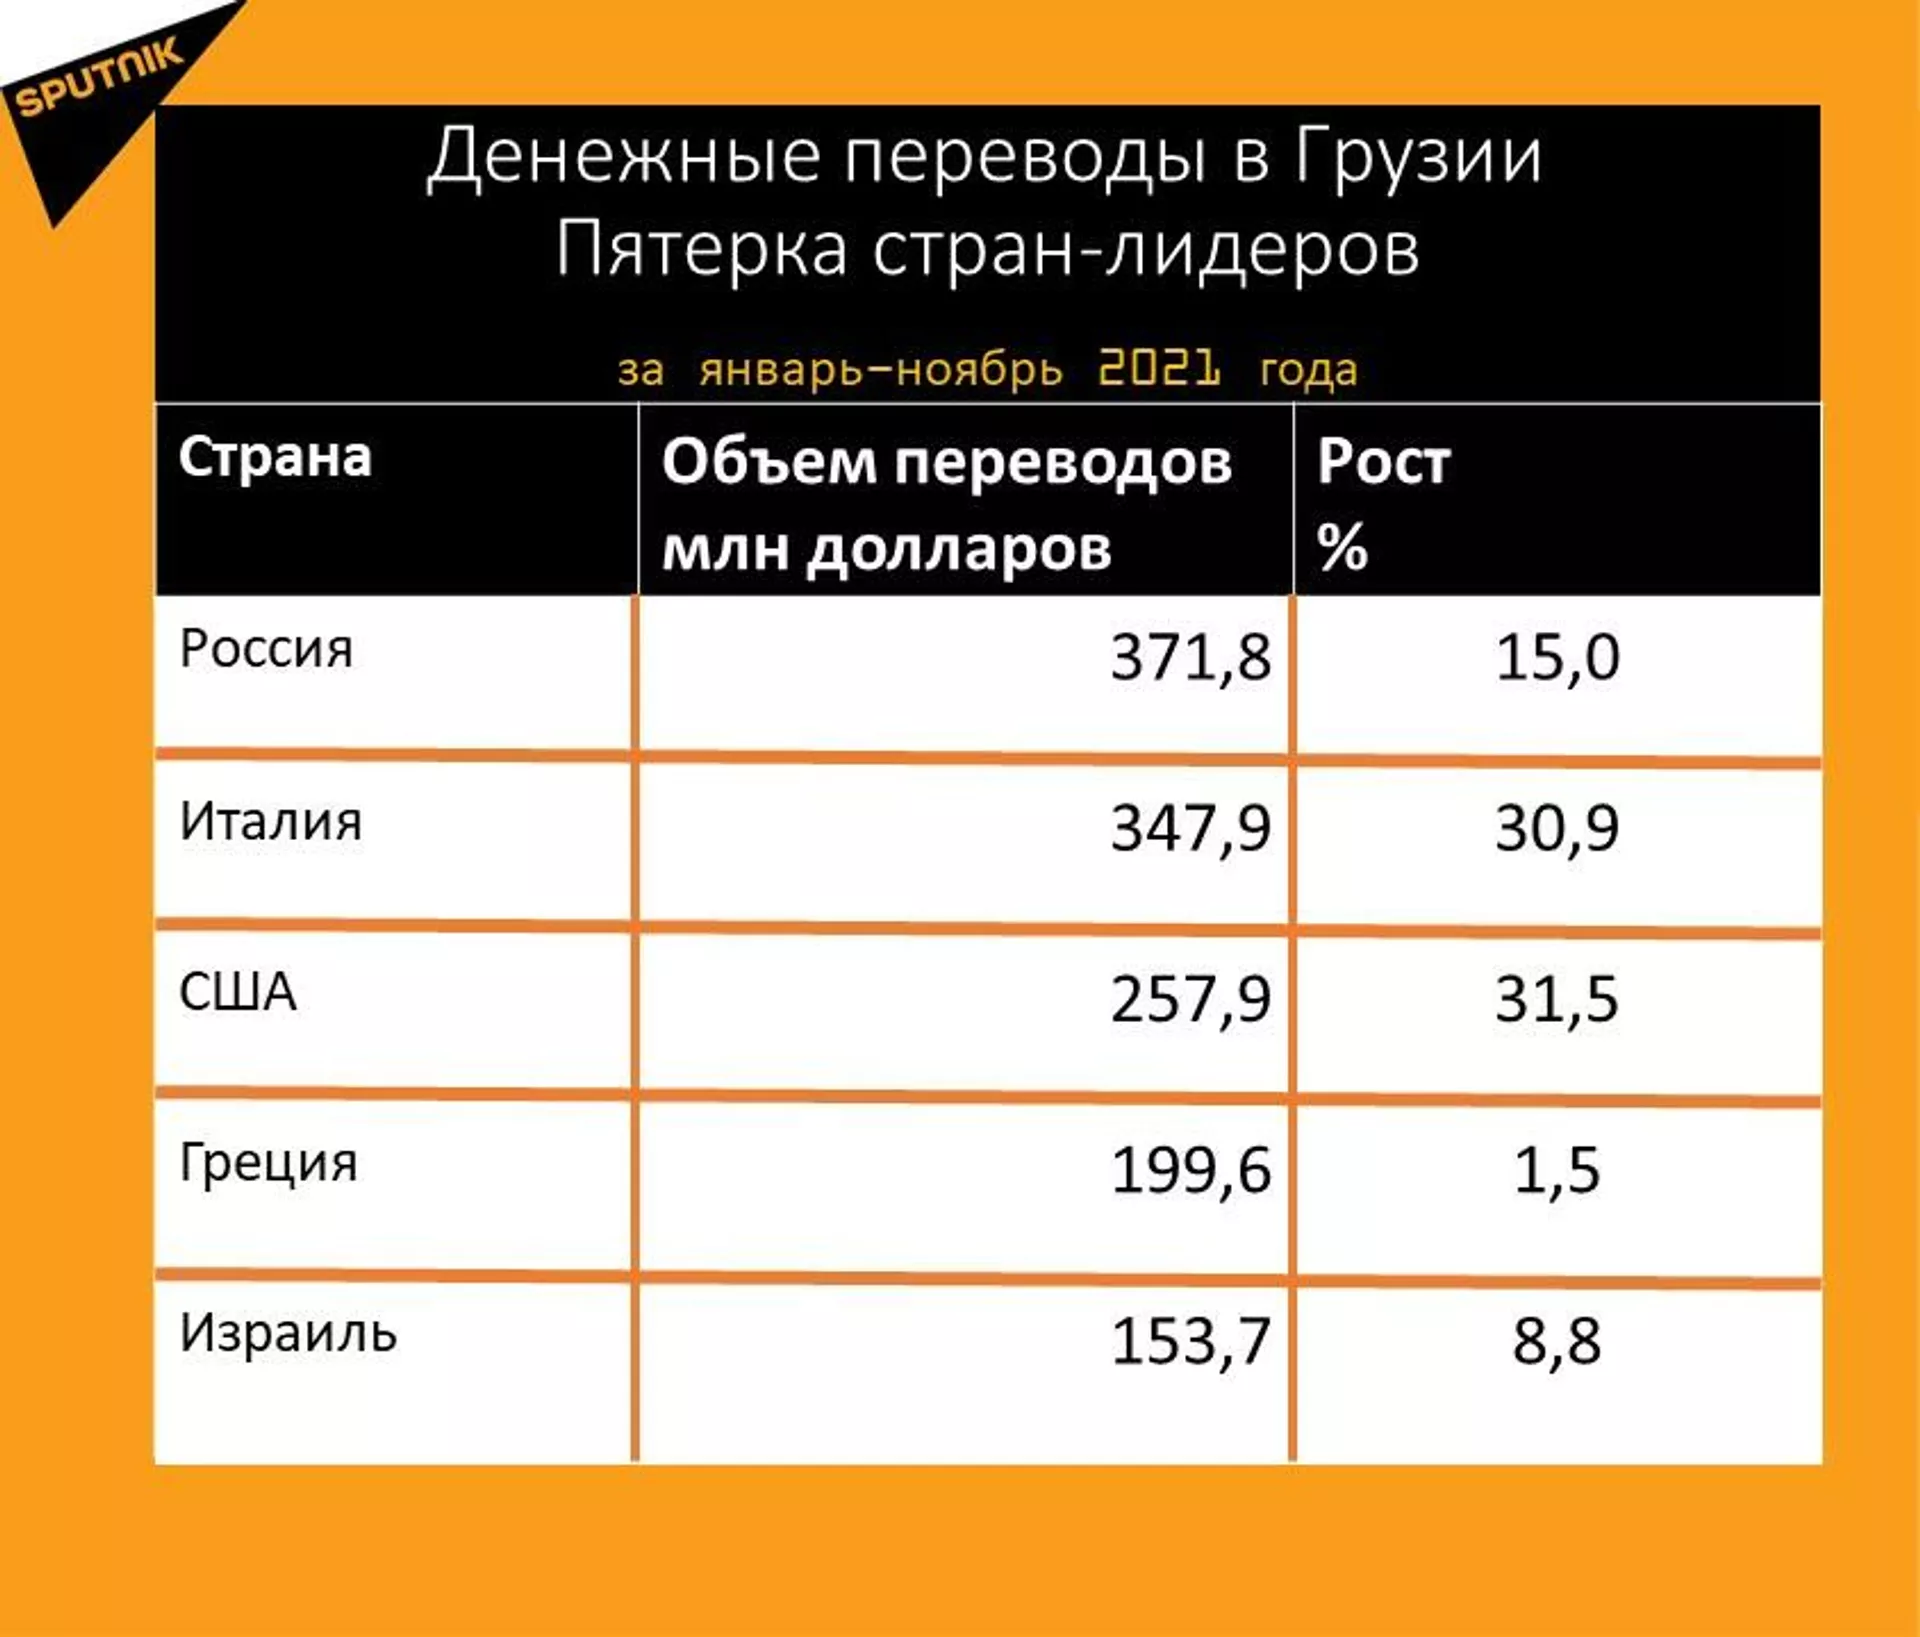 Статистика денежных переводов в Грузию за январь-ноябрь 2021 года - Sputnik Грузия, 1920, 16.12.2021